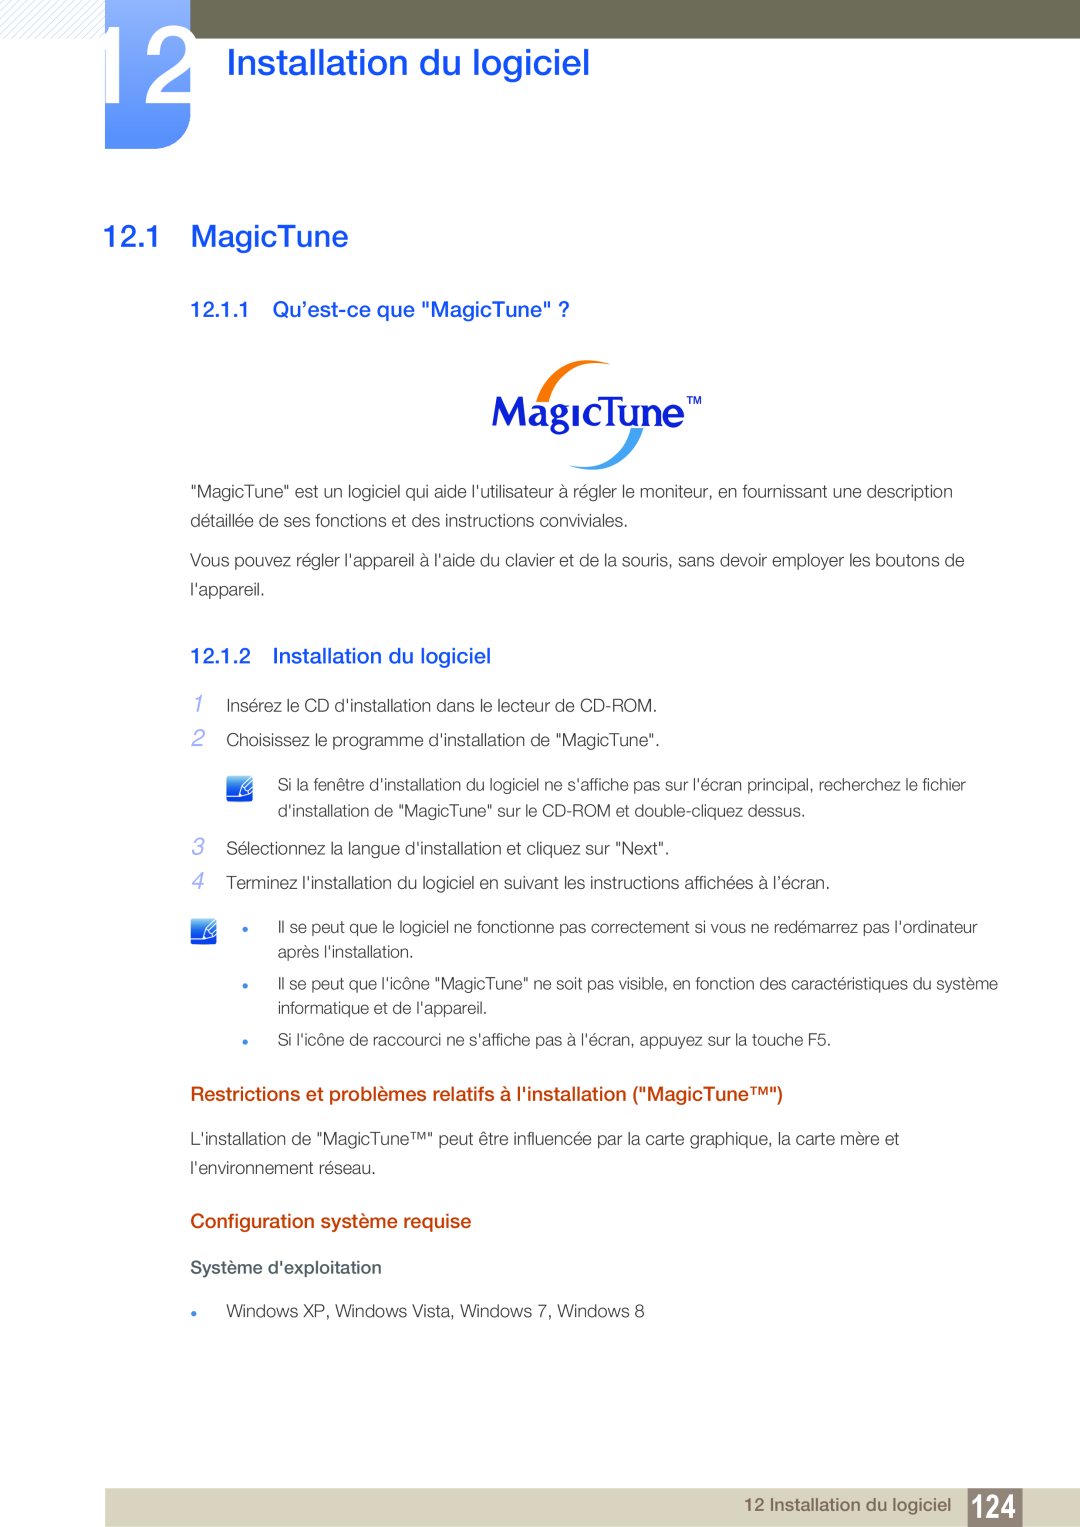 Samsung LS22D300NY/EN manual Installation du logiciel, 12.1.1 Qu’est-ce que MagicTune ?, Configuration système requise 